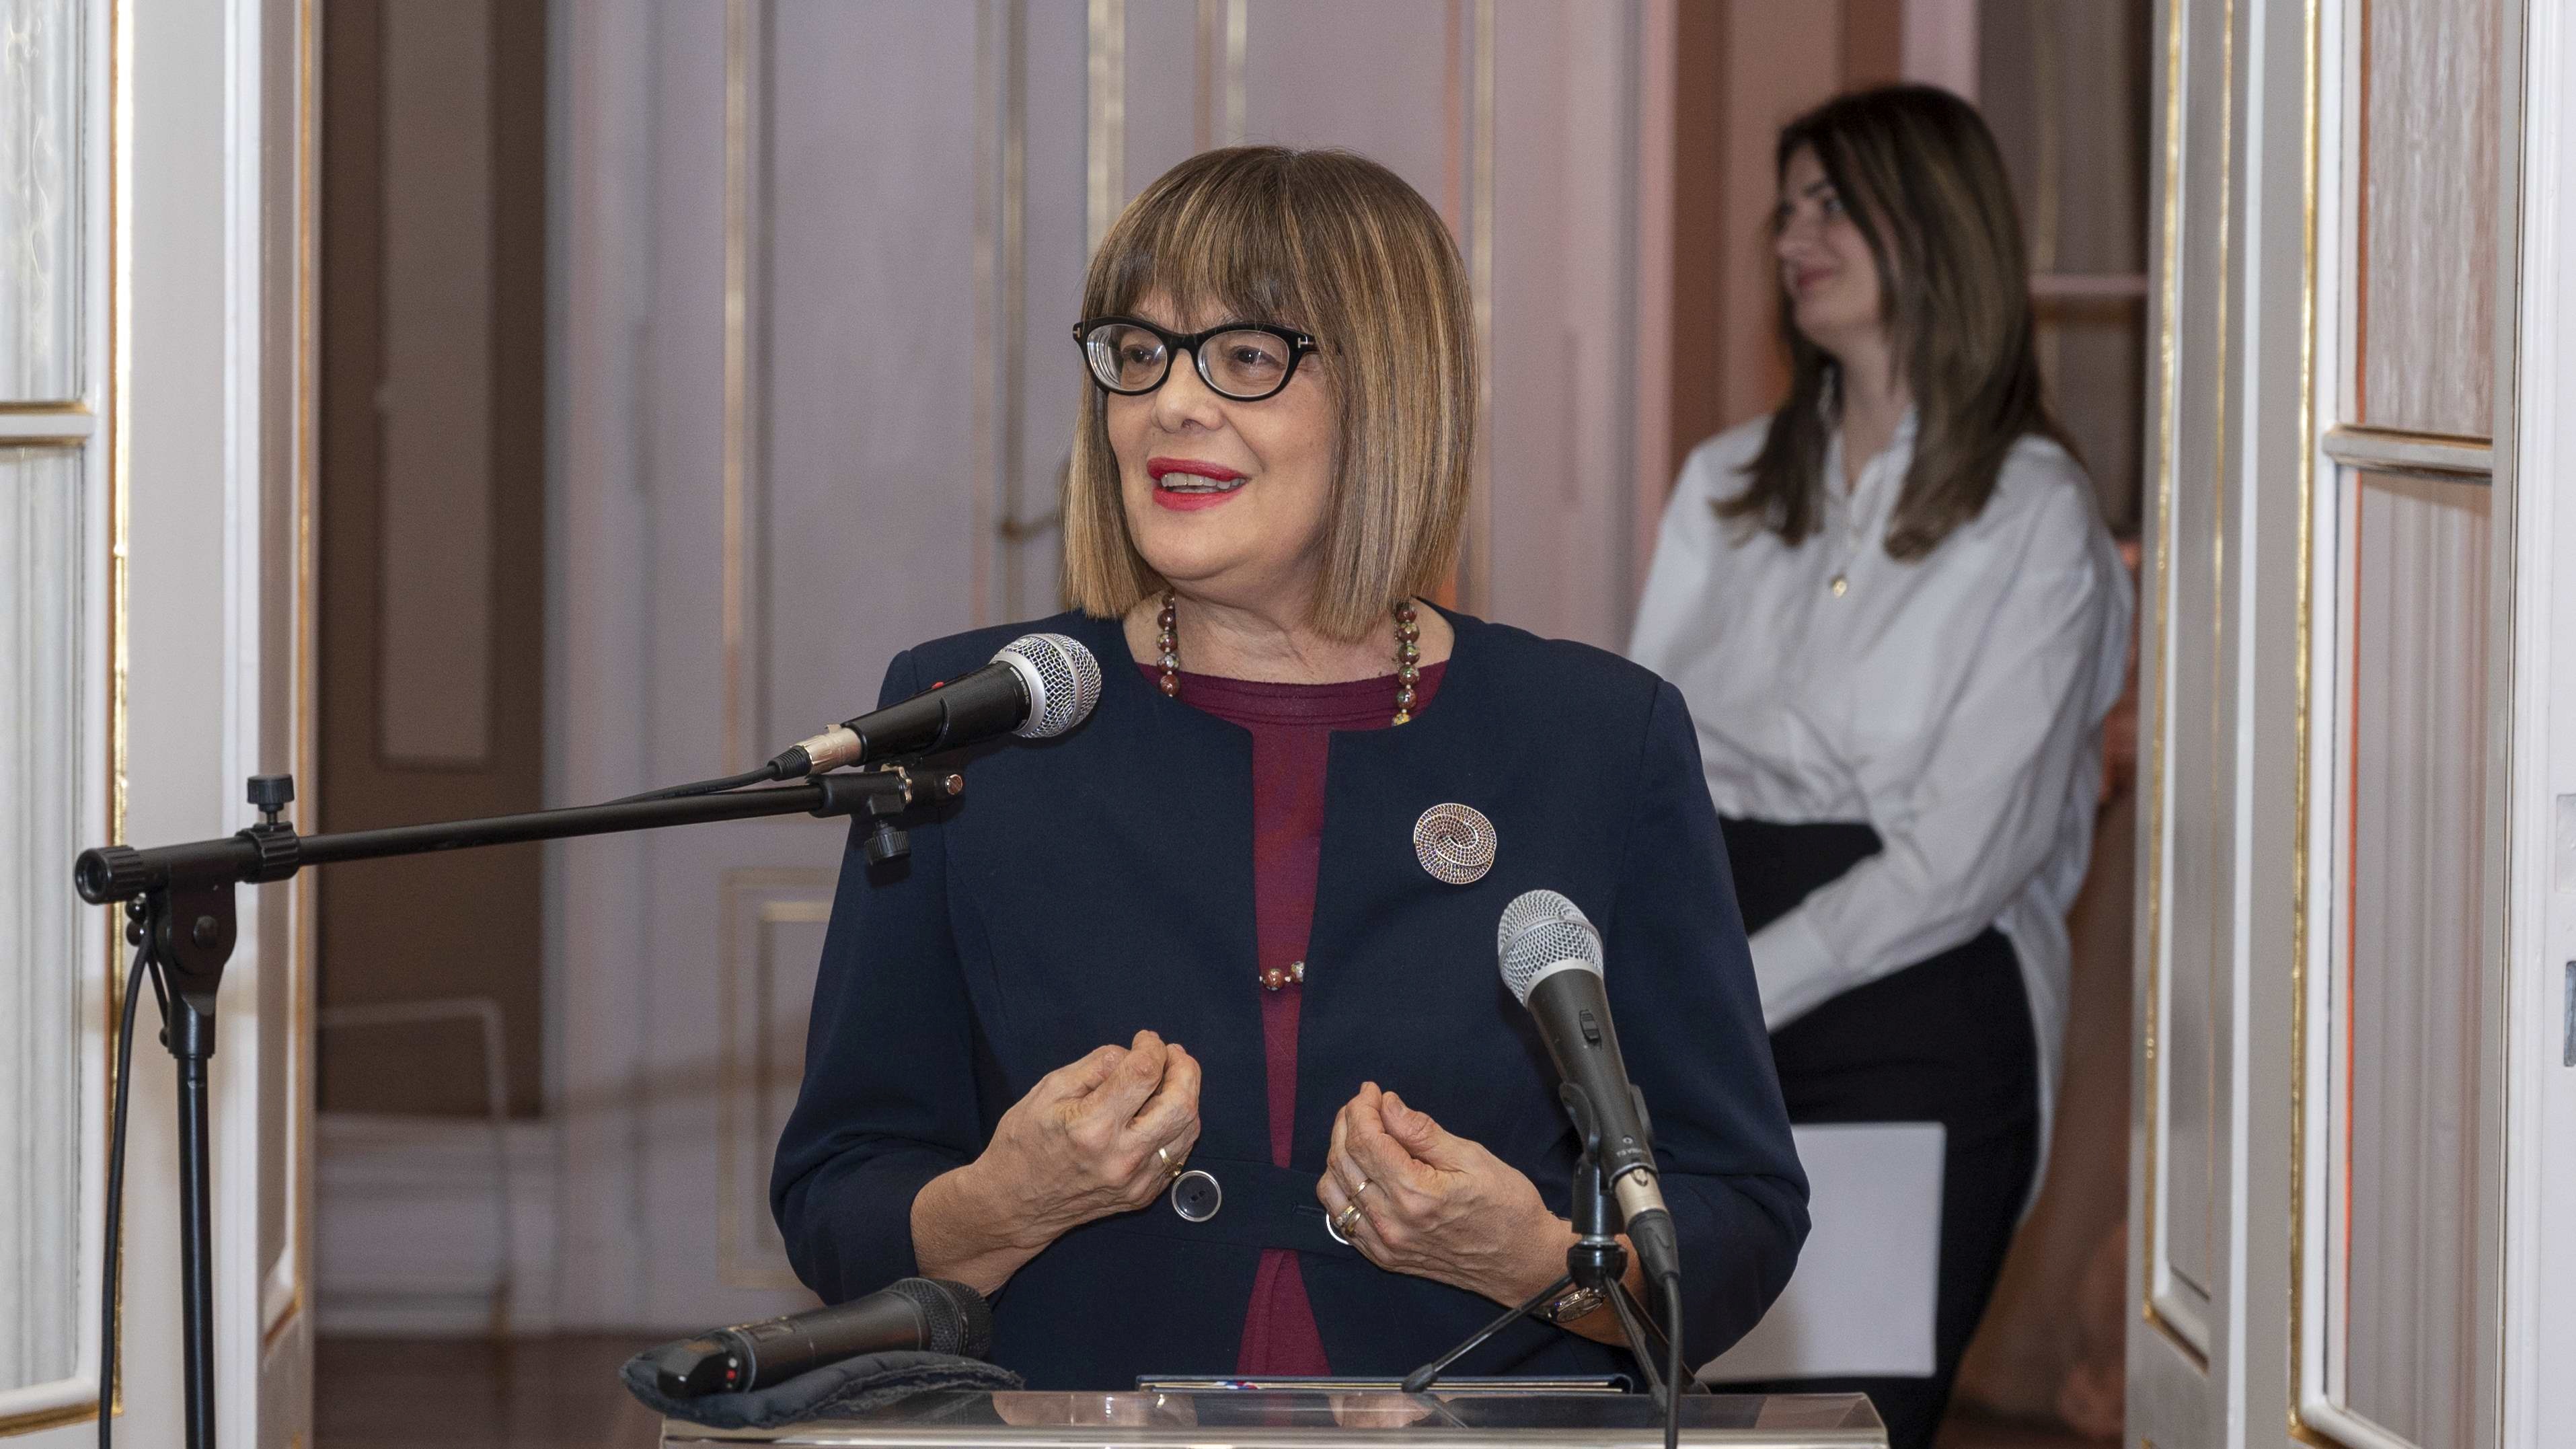 Гојковић данас упутила иницијативу Музеју Југославије да се оснује Женски музеј у оквиру те установе